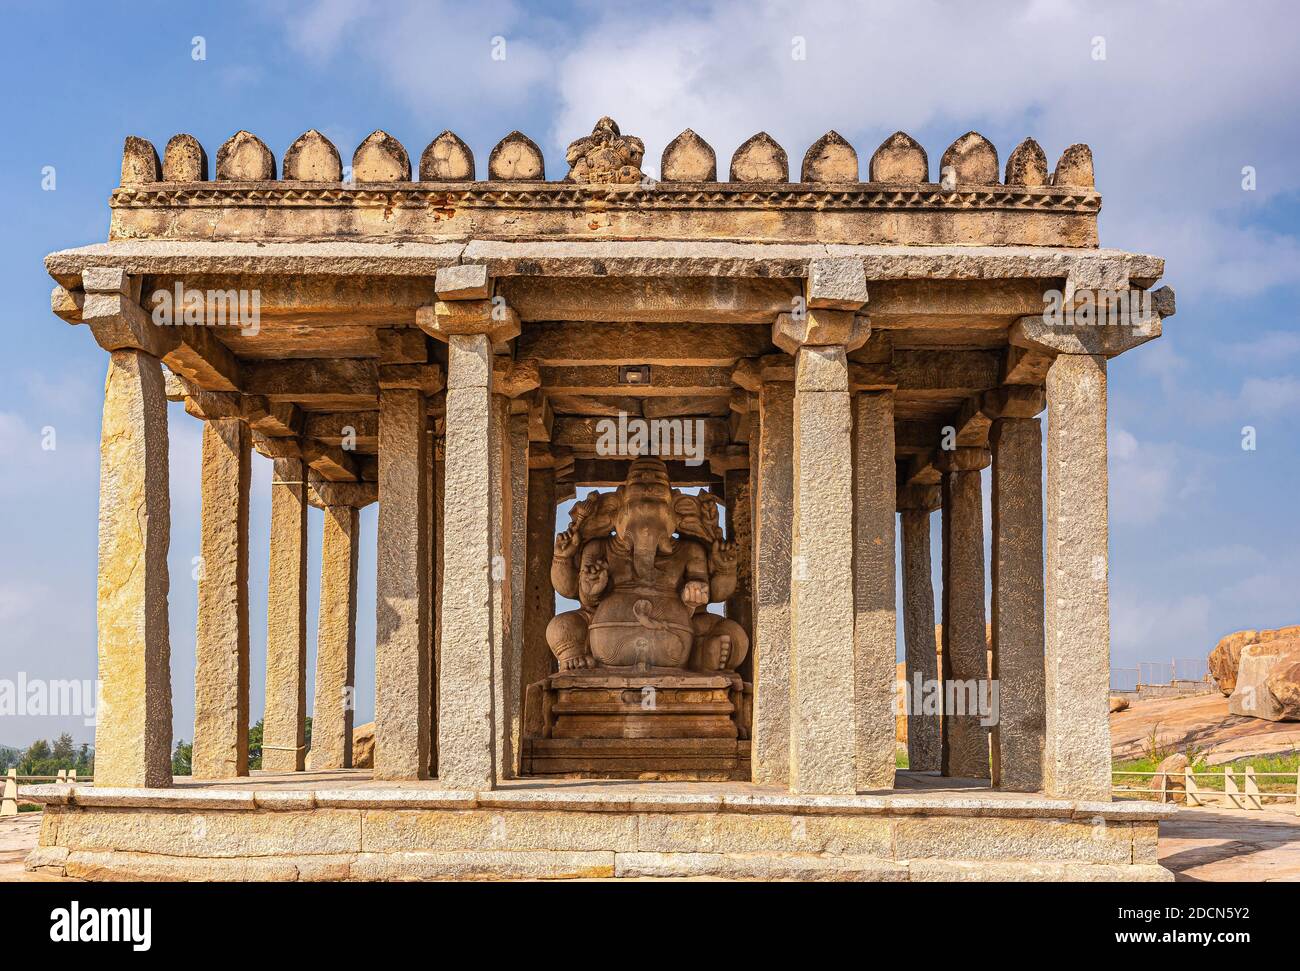 Krishnapura, Karnataka, Inde - 4 novembre 2013 : gros plan de Sasivekaly Ganesha ou de Mustard Seed, sanctuaire de pierre brune, isolé contre le ciel bleu. Banque D'Images